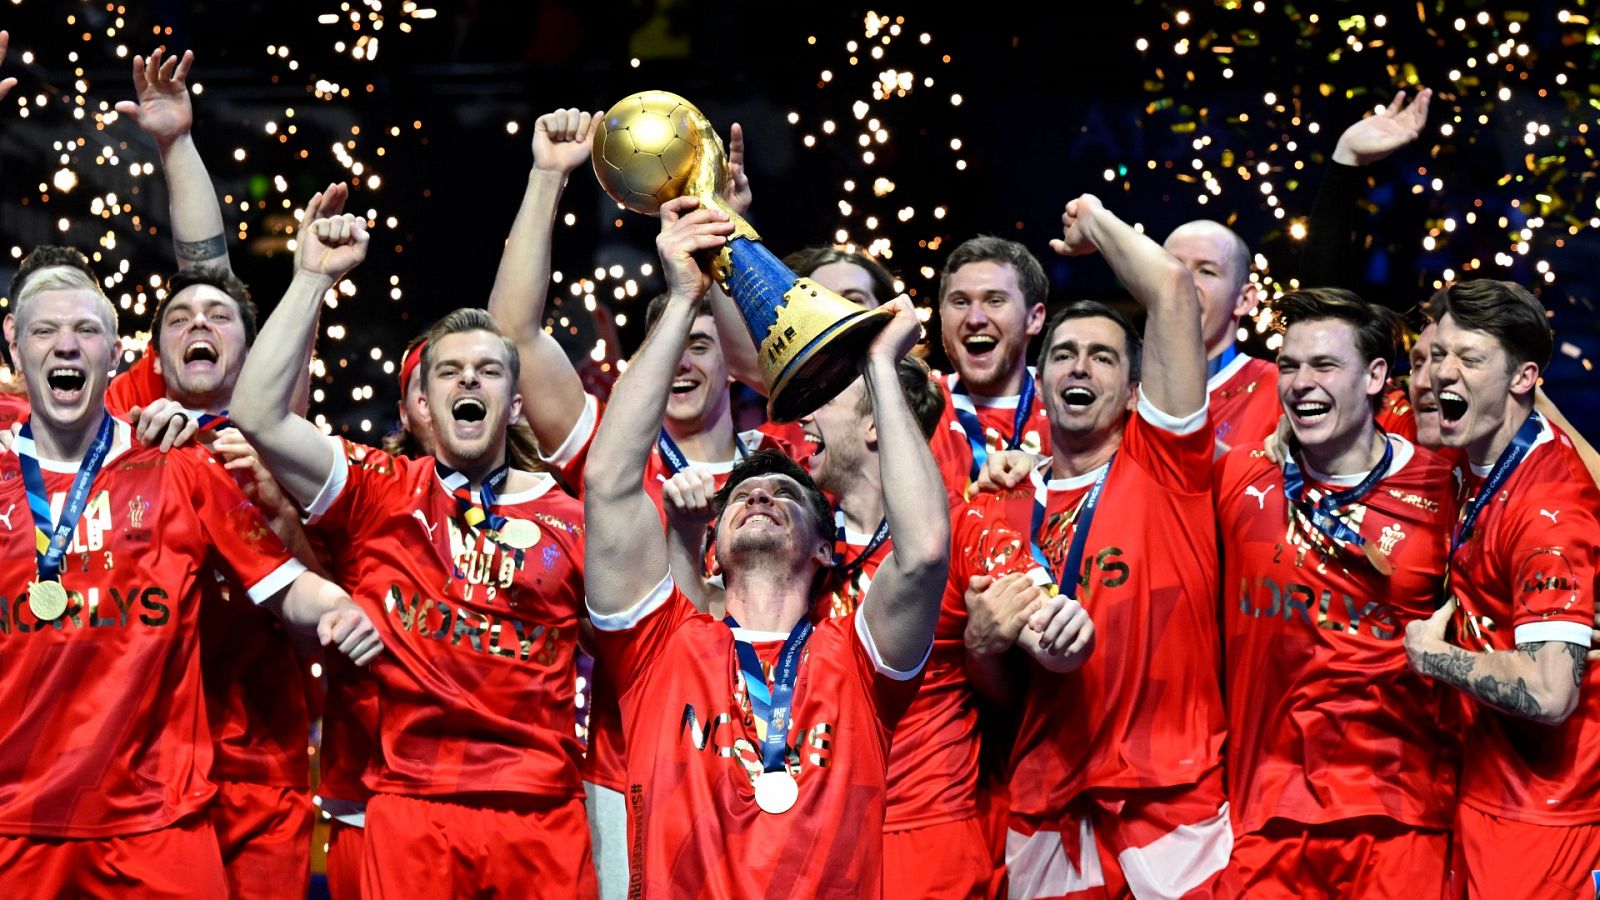 Francia - Dinamarca, Final Mundial balonmano | Resumen en vídeo